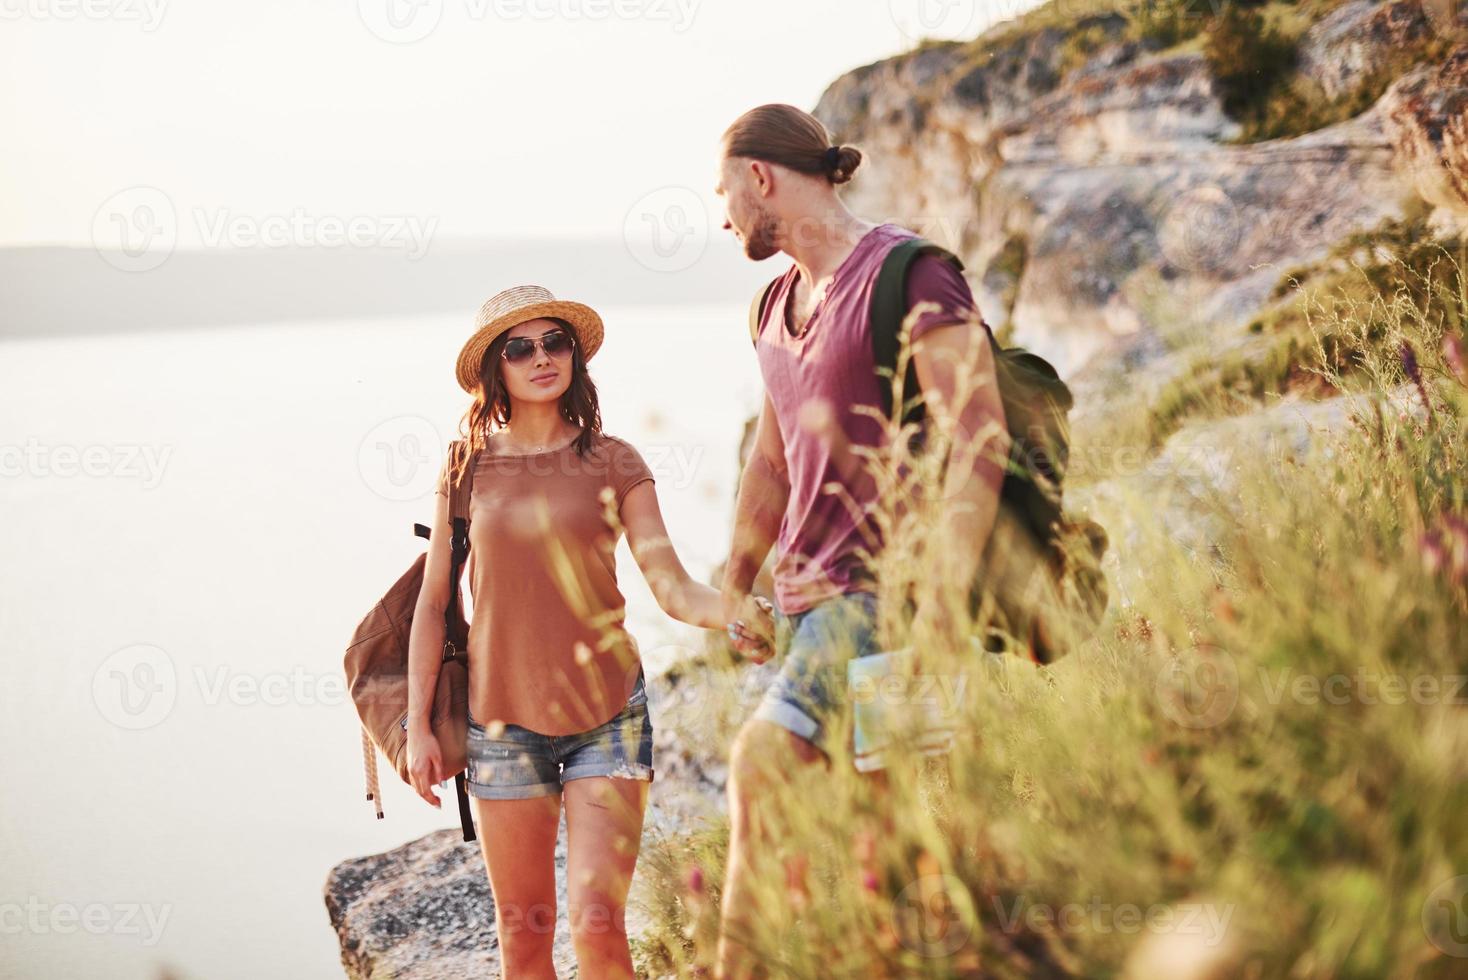 wunderschöne Menschen auf majestätischem Hintergrund. junges Paar hat beschlossen, seinen Urlaub aktiv am Rande des wunderschönen Felsens mit See im Hintergrund zu verbringen foto